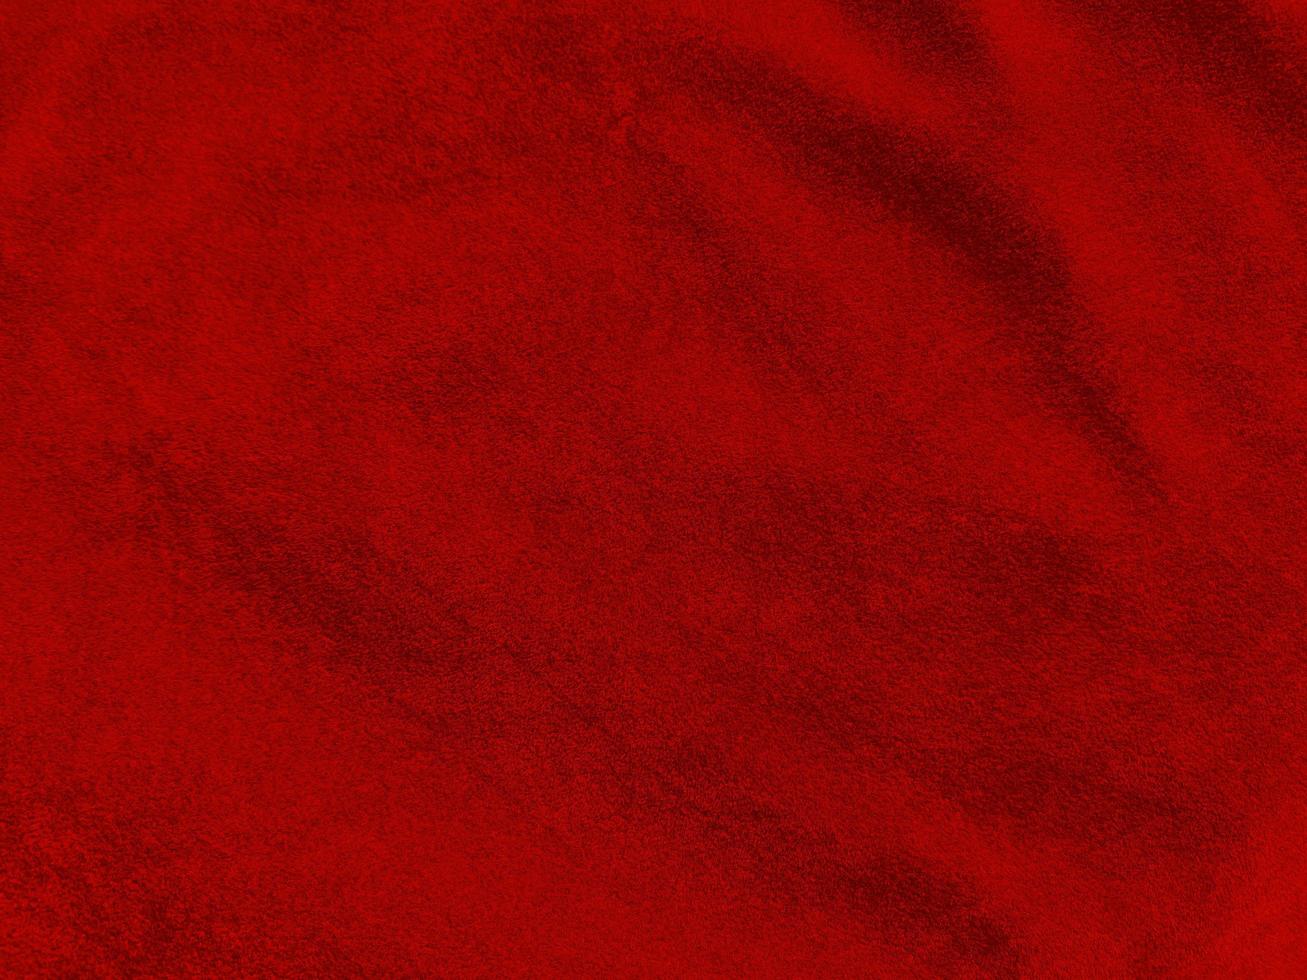 textura de tela de terciopelo rojo oscuro utilizada como fondo. fondo de tela rojo oscuro vacío de material textil suave y liso. hay espacio para el texto.. foto